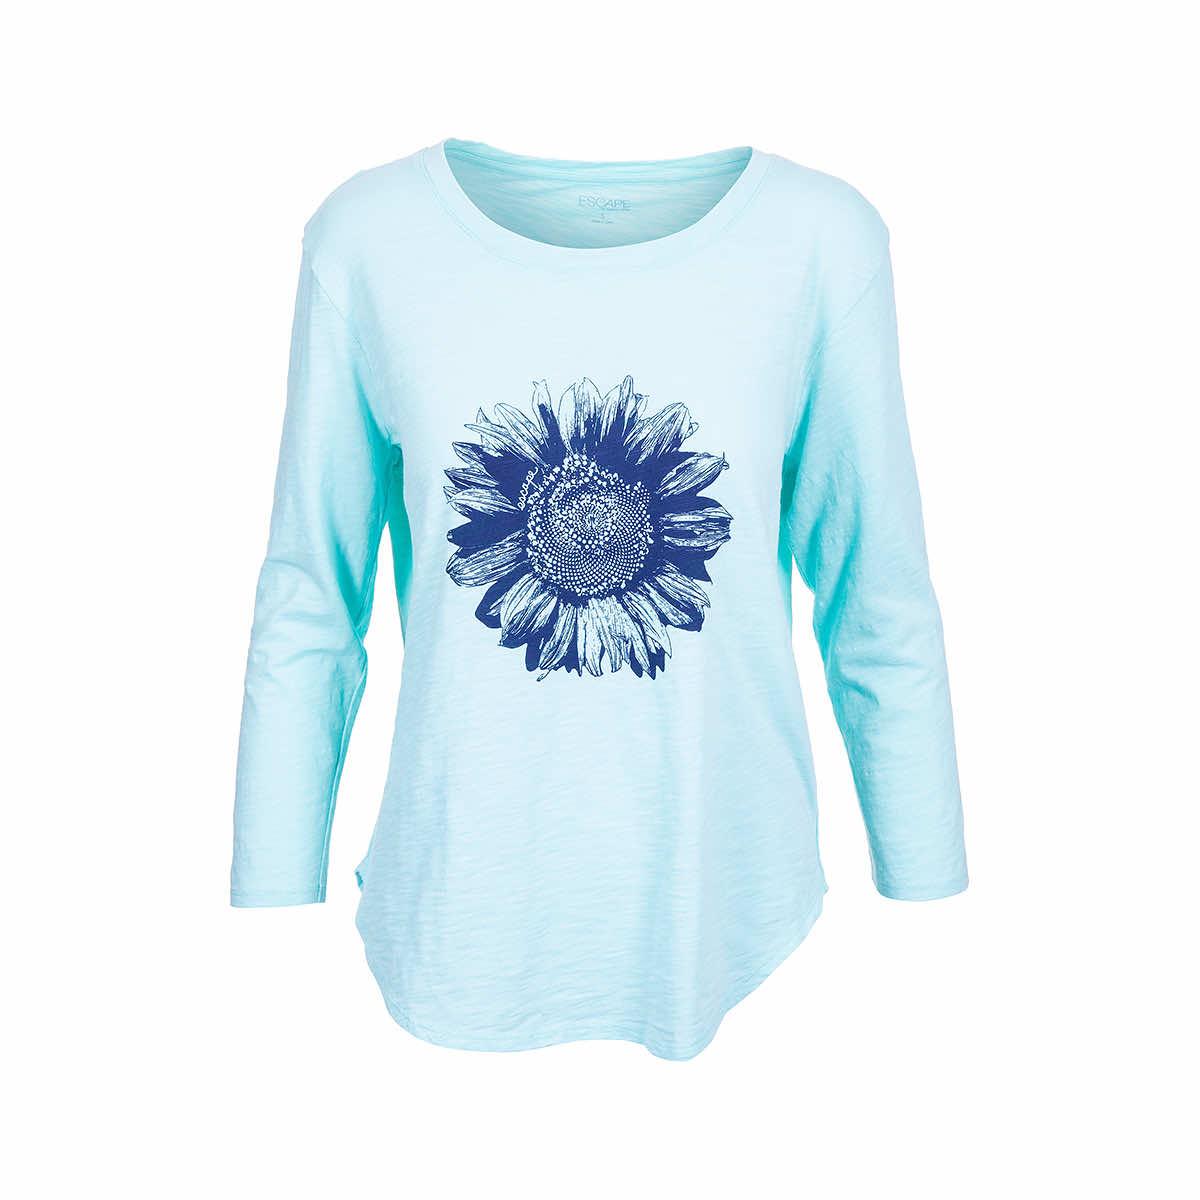  Women's Sunflower Long Sleeve High- Low T- Shirt